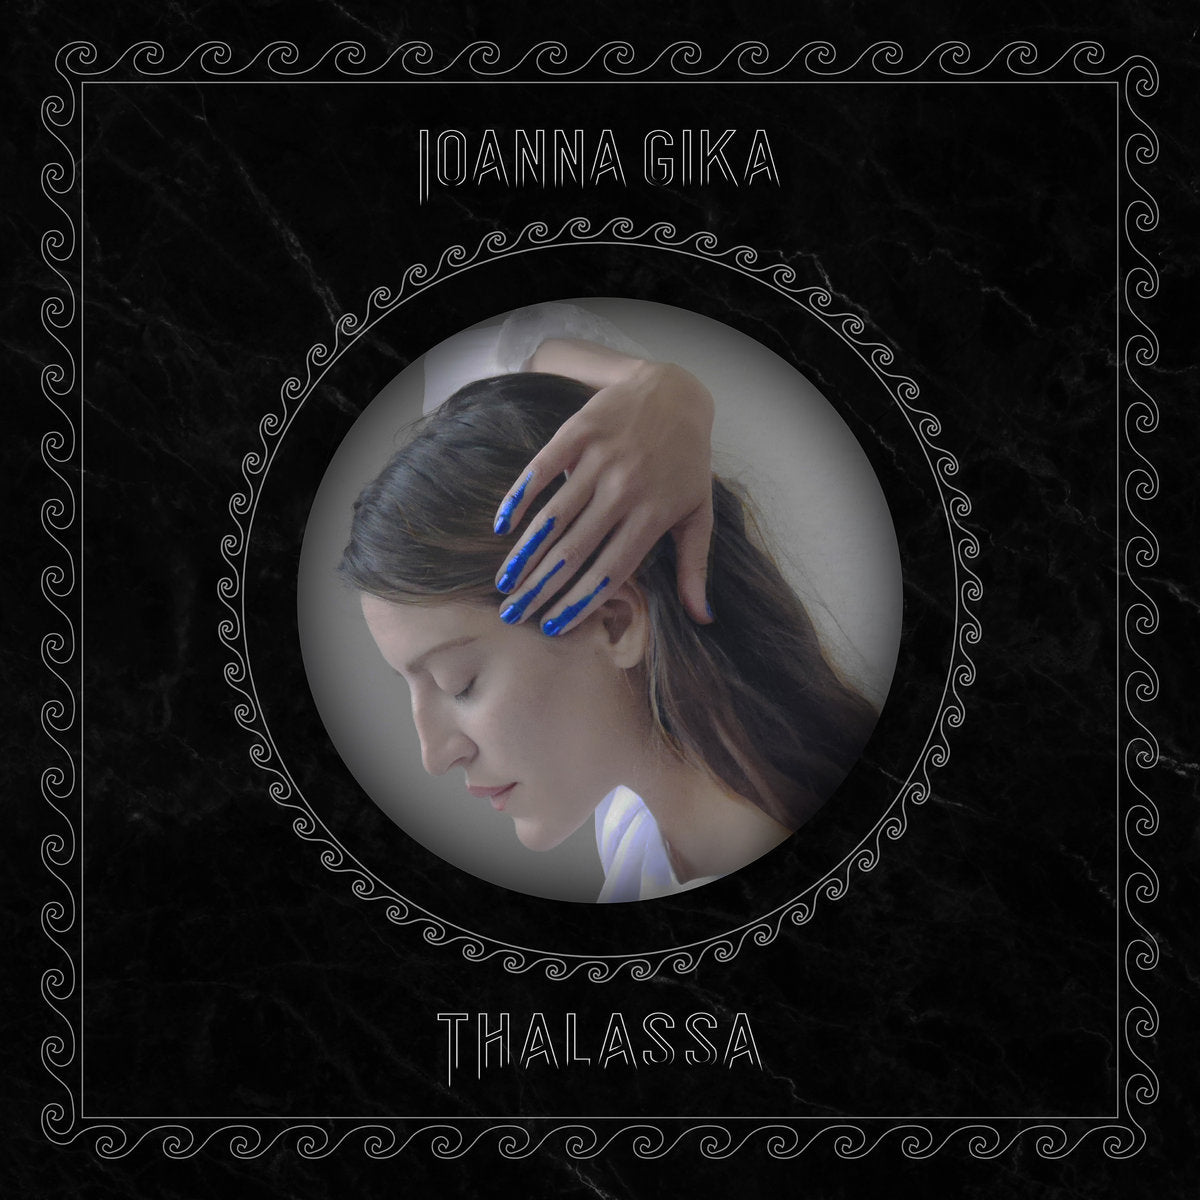 IOANNA GIKA "Thalassa" CD